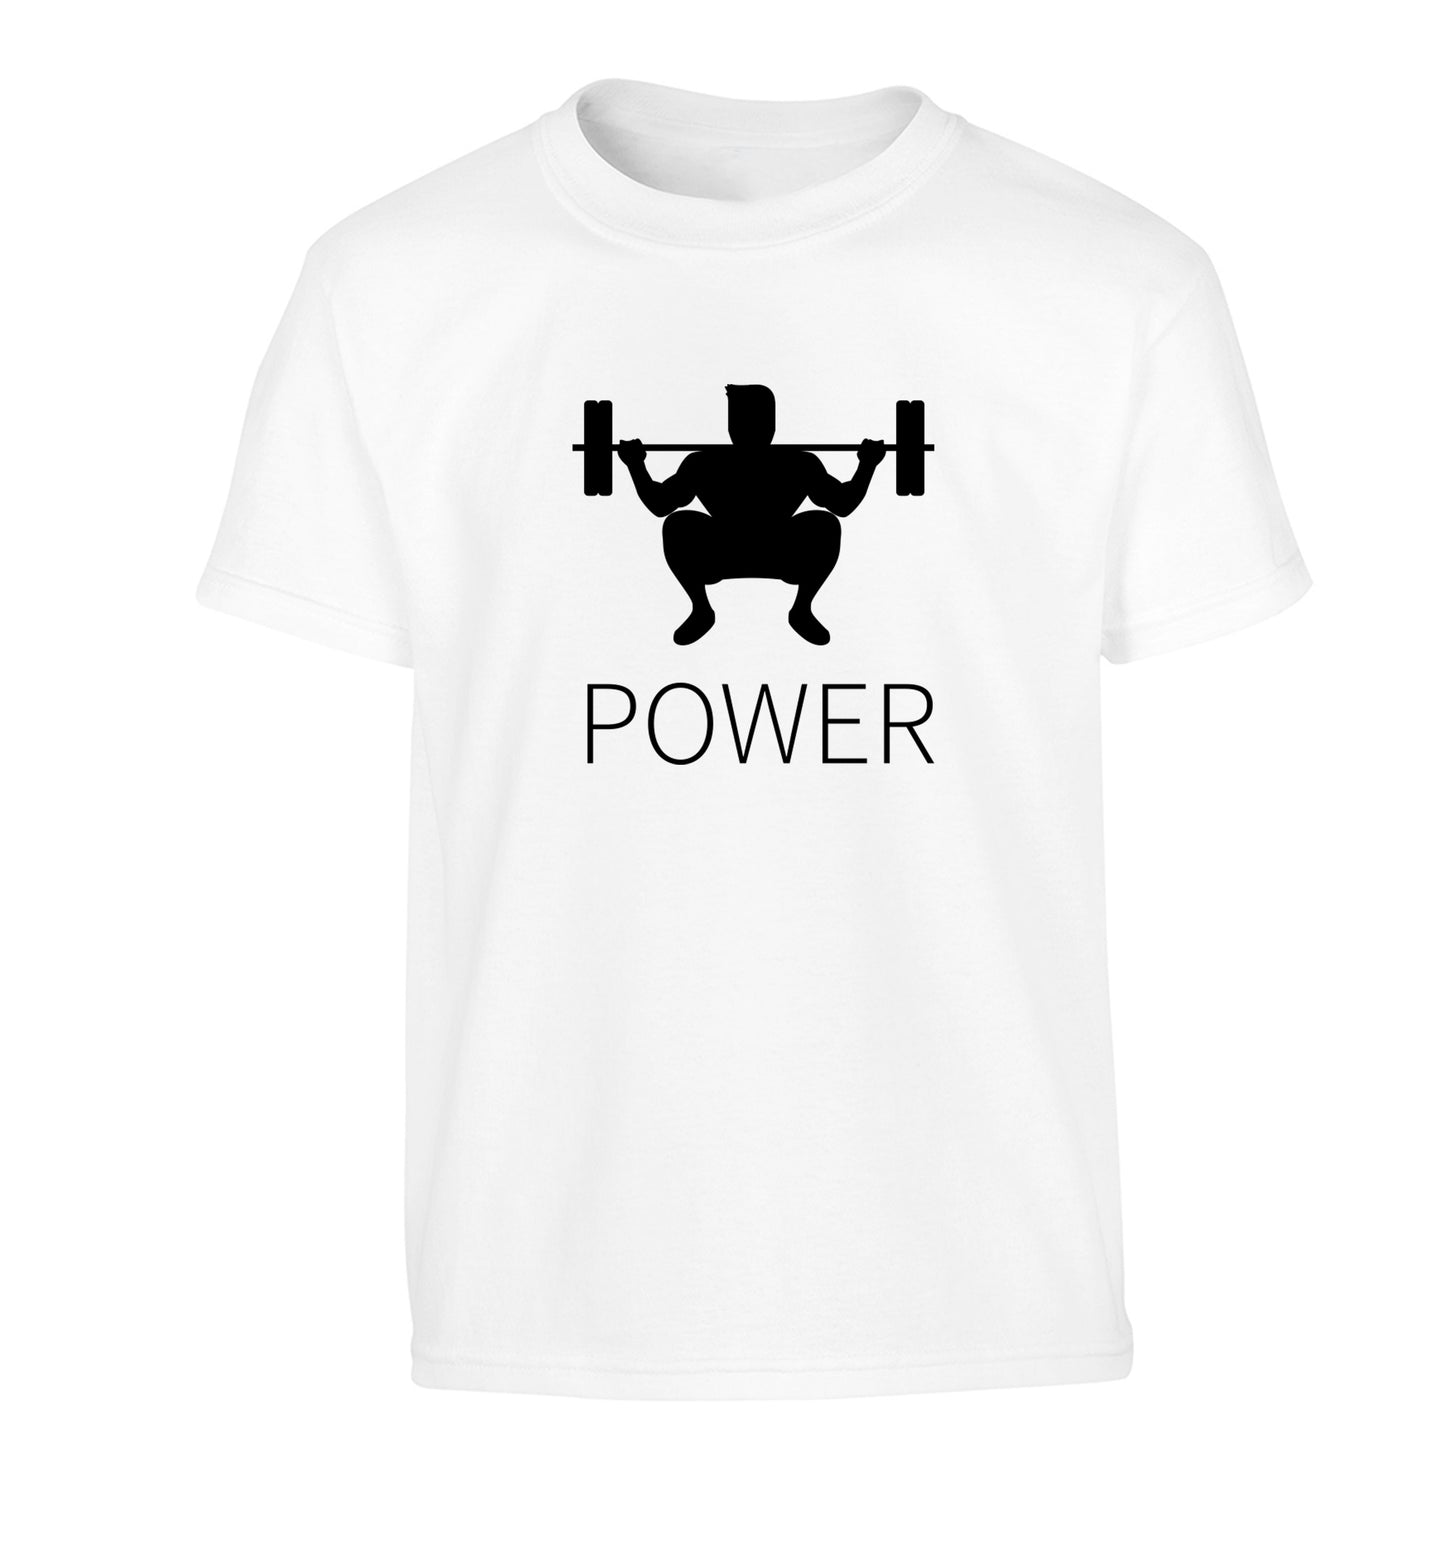 Lift power Children's white Tshirt 12-13 Years